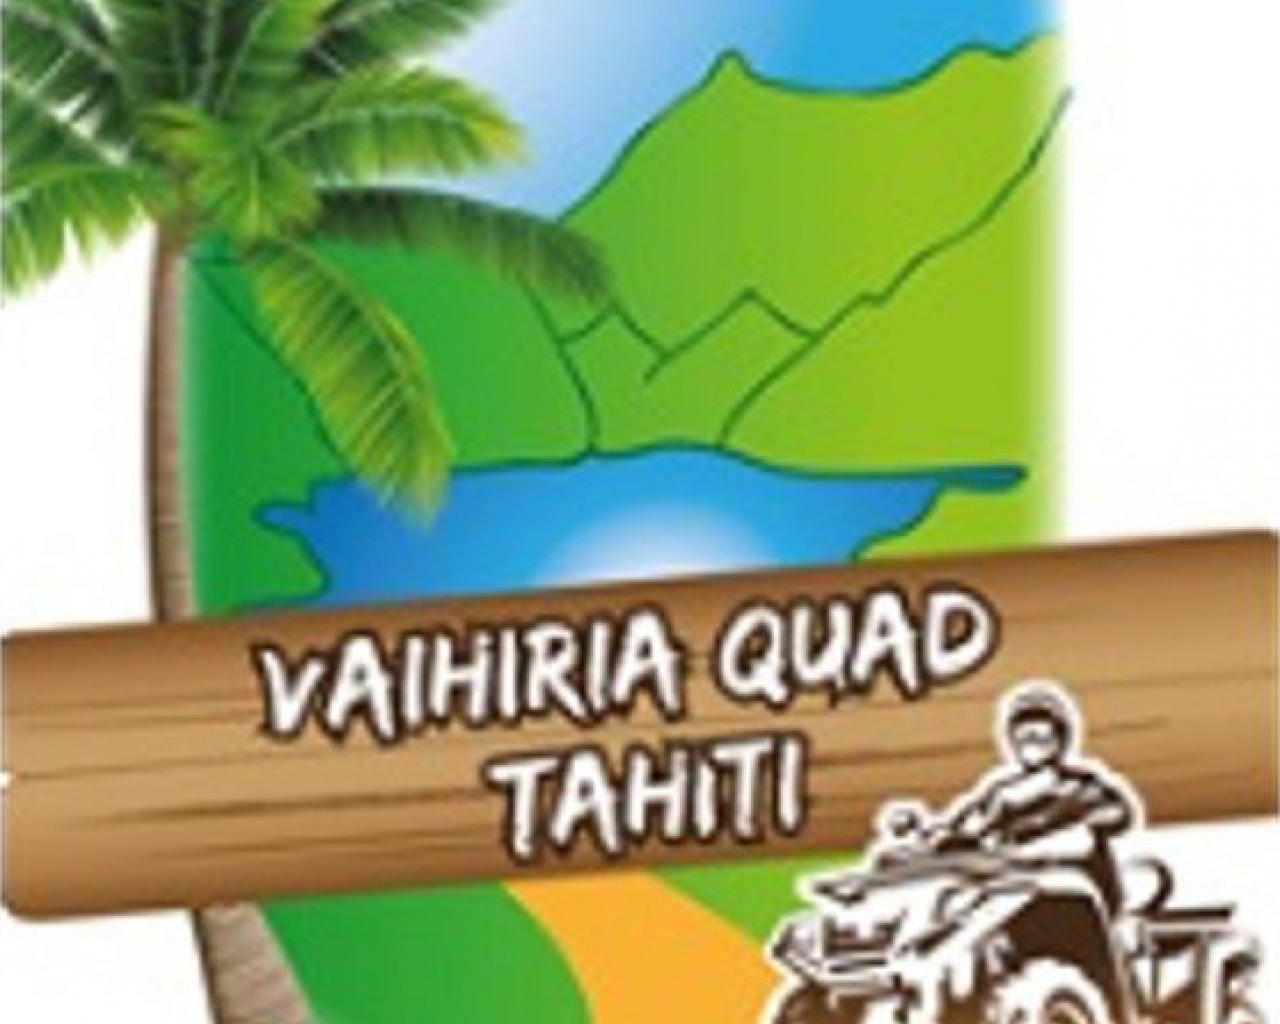 Vaihiria Quad Tahiti